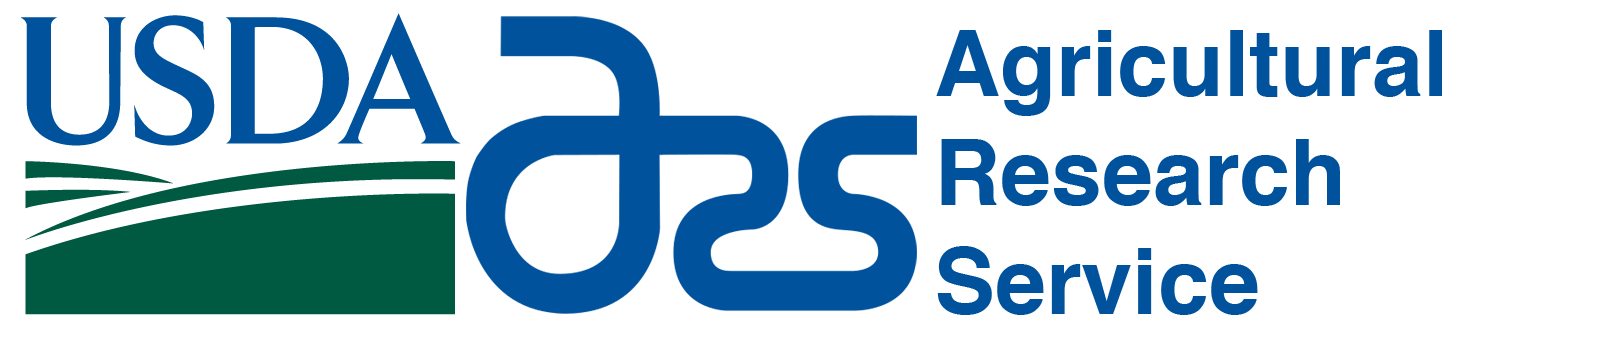 USDA-ARS Logo - PRISM Climate Group, Oregon State U